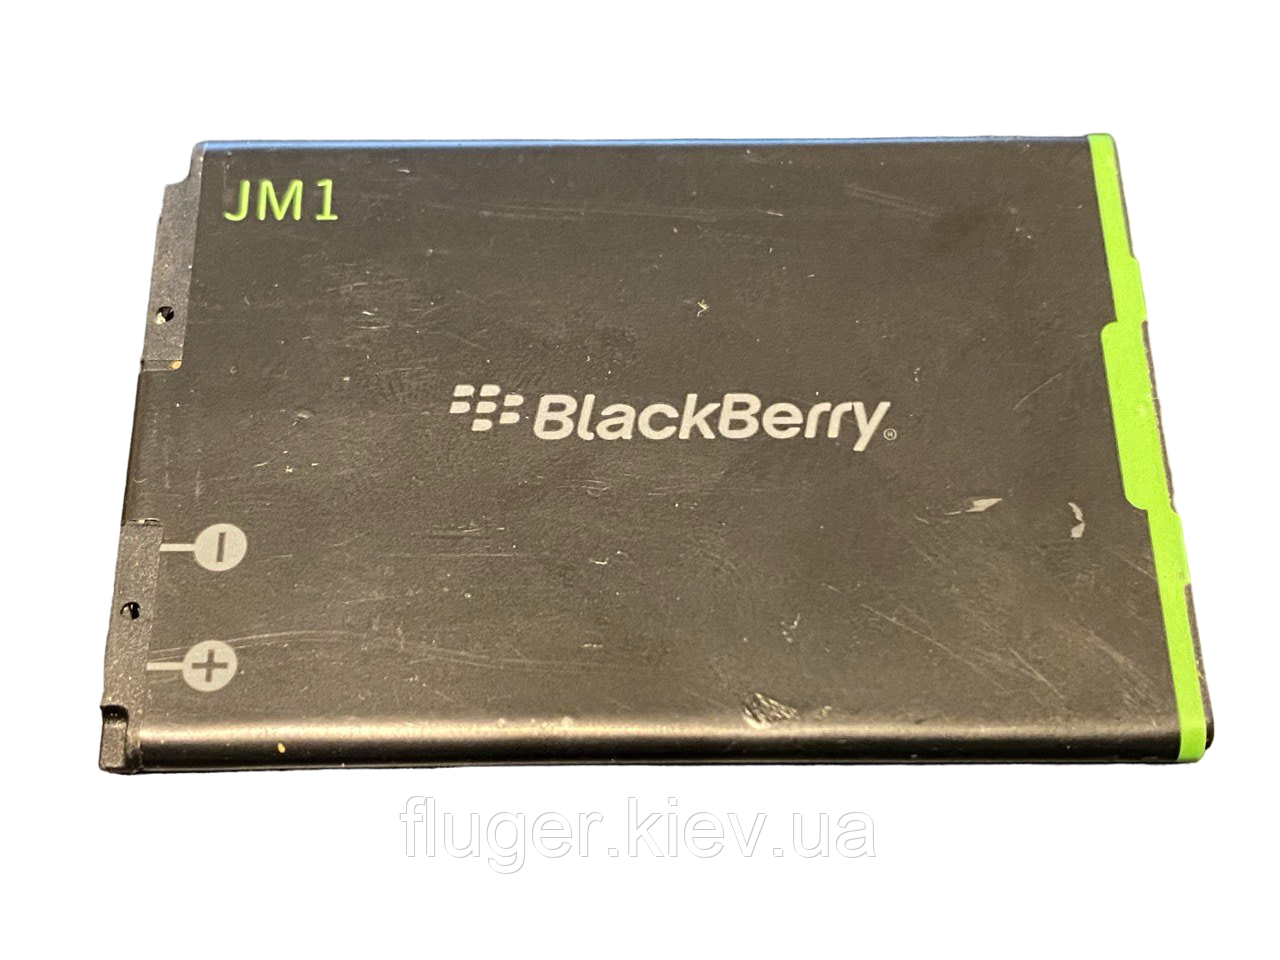 Акумулятор BlackBerry JM1, 9900, 9930 Torch (BAT-30615-006)